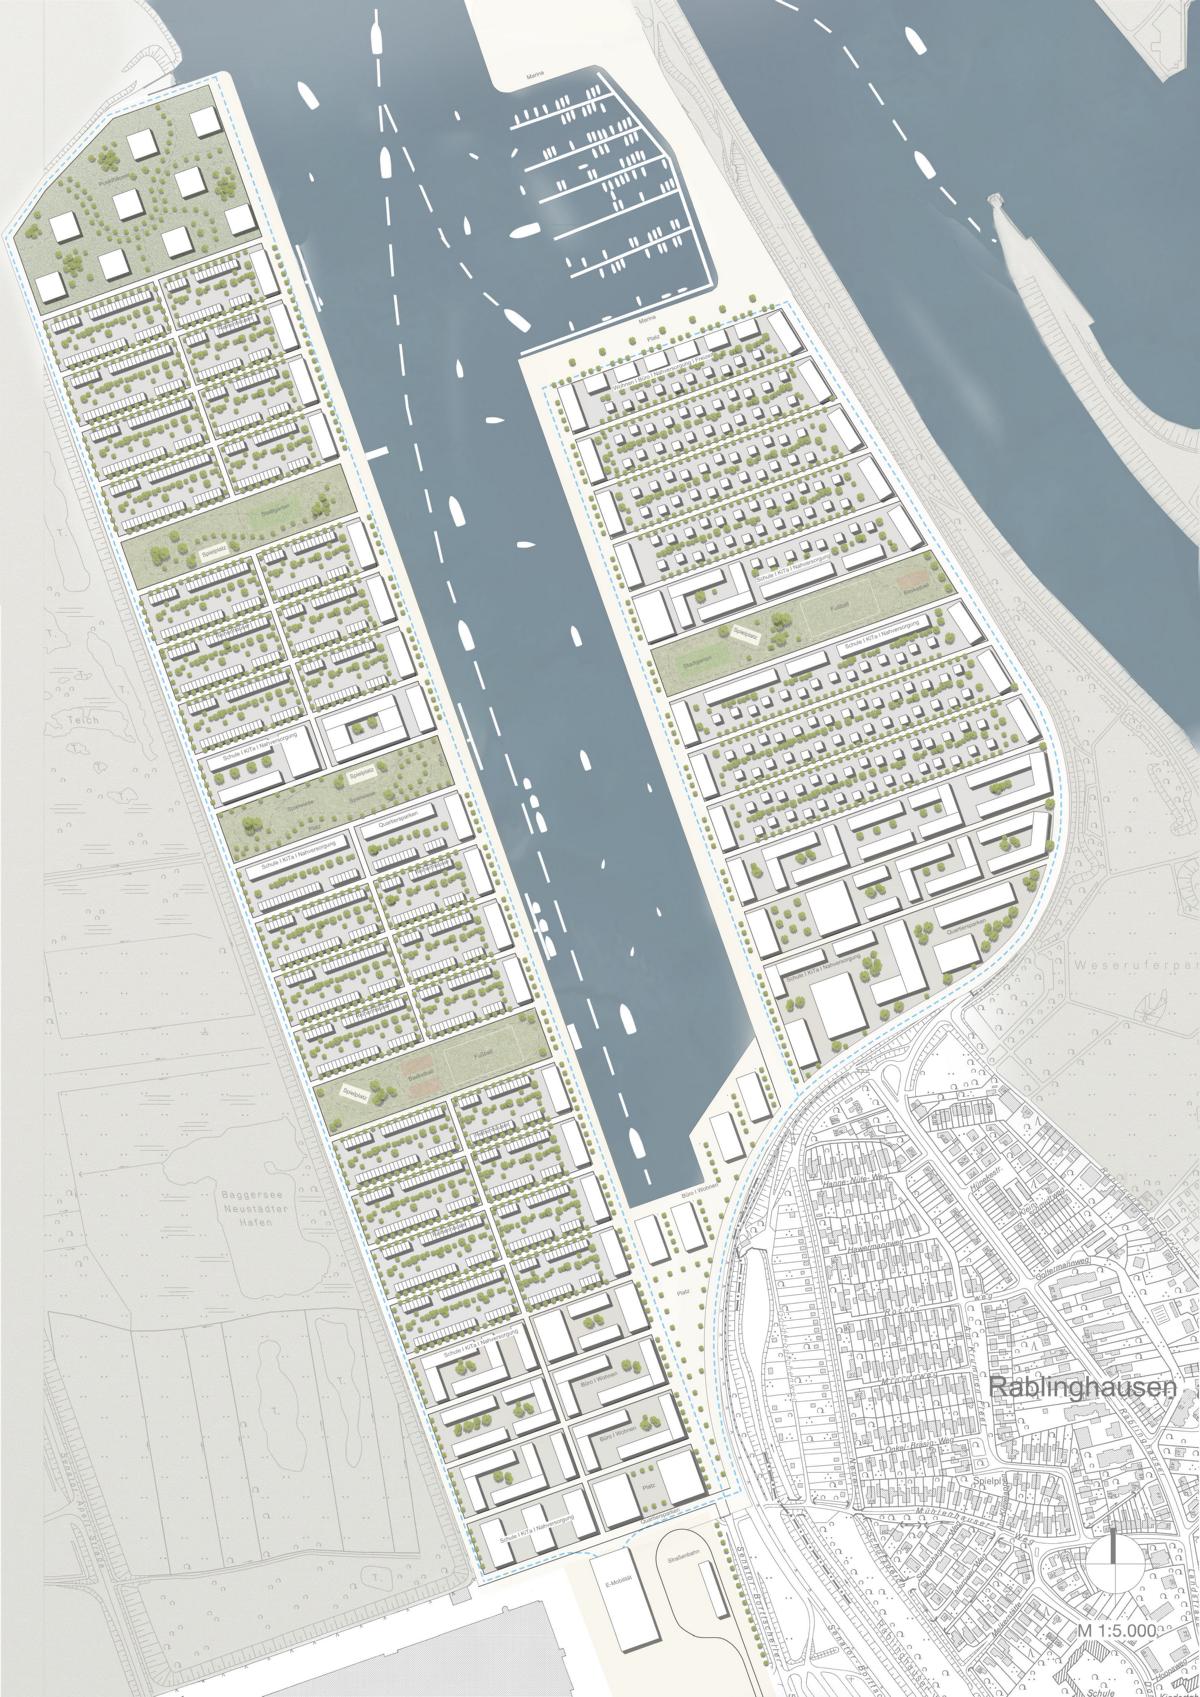 Modell Lageplan Neustädter Hafen